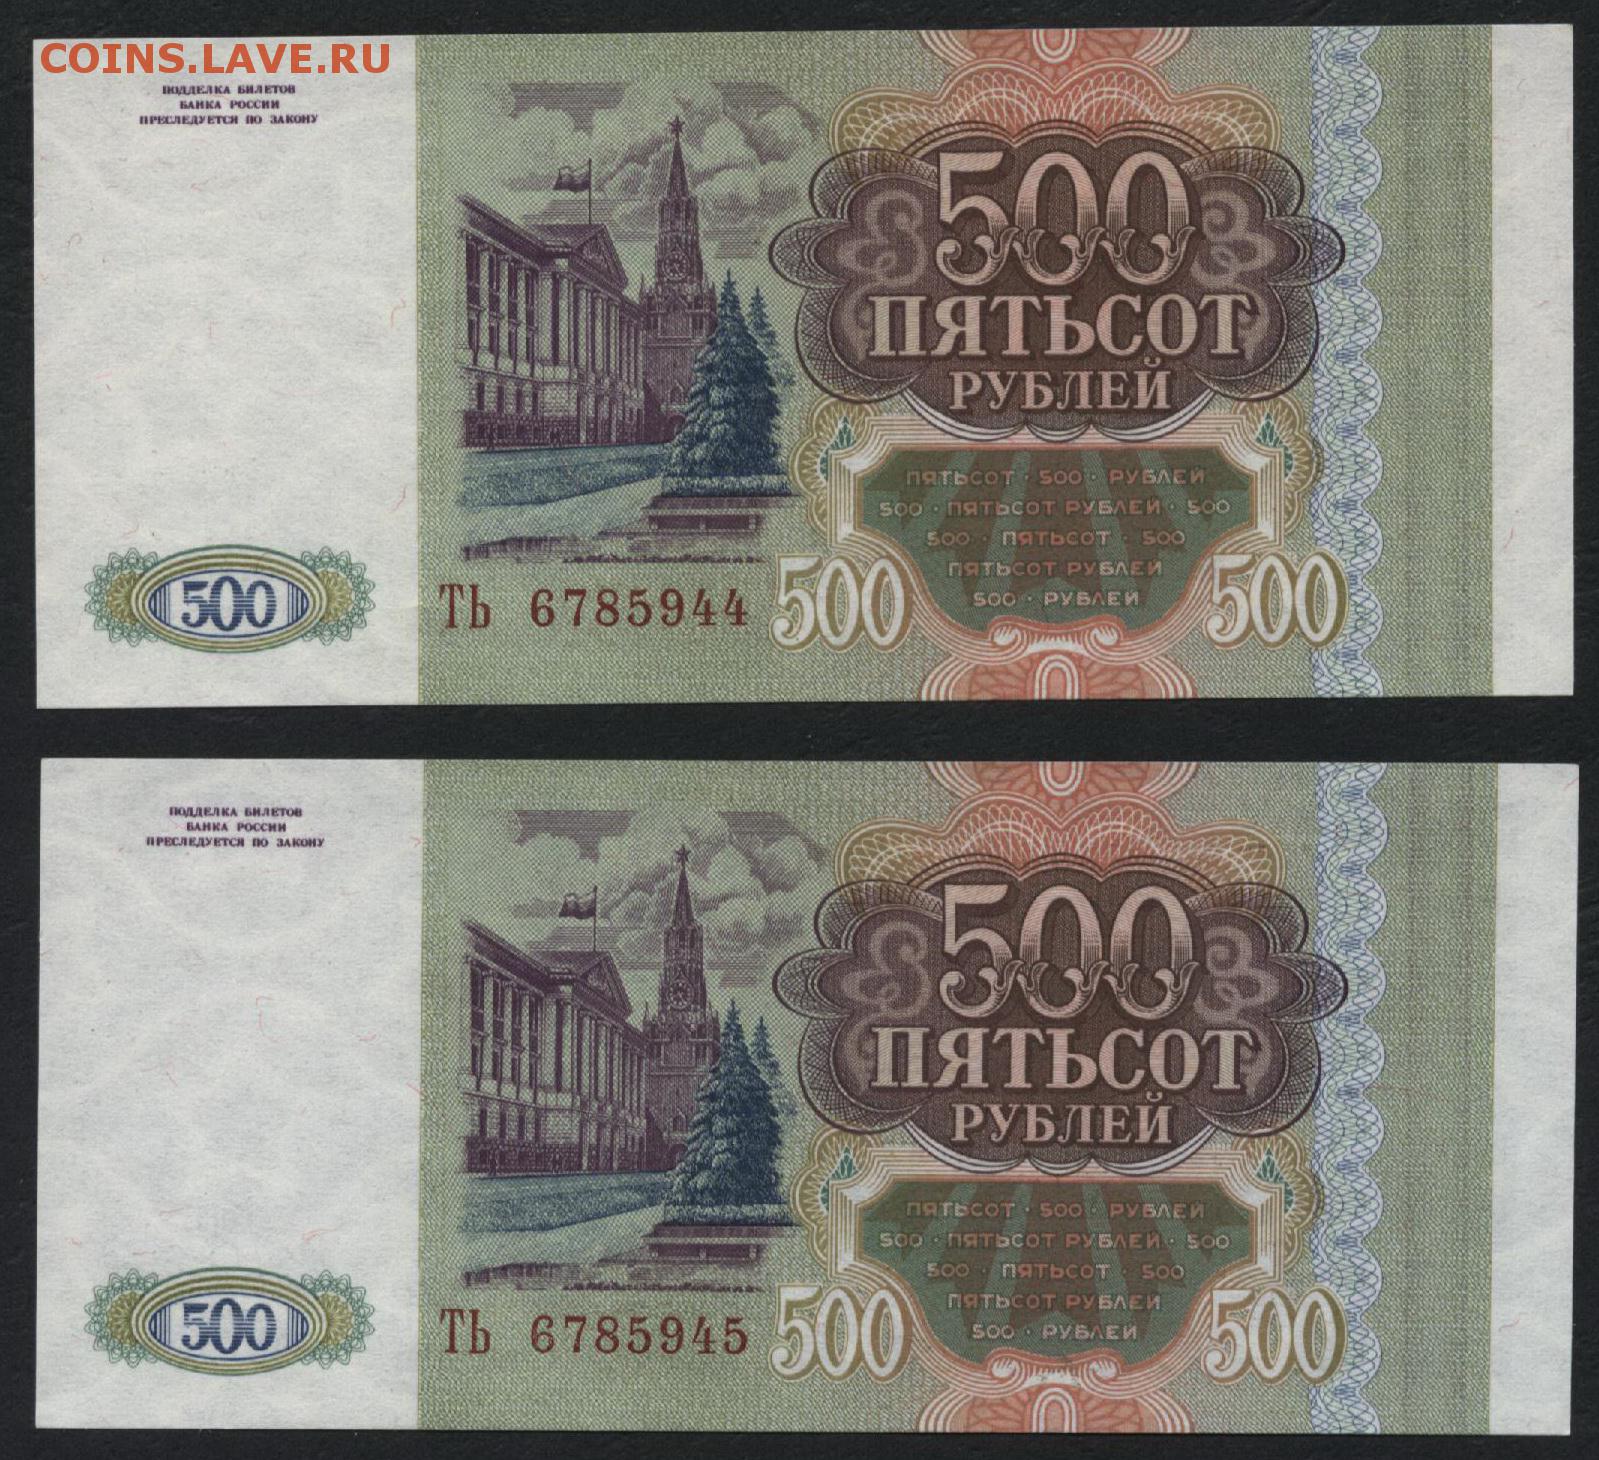 5 от 500 рублей. 500 Рублей. 500 Рублей 1993. Пятьсот рублей 1993. 500 Рублей 1993 года.